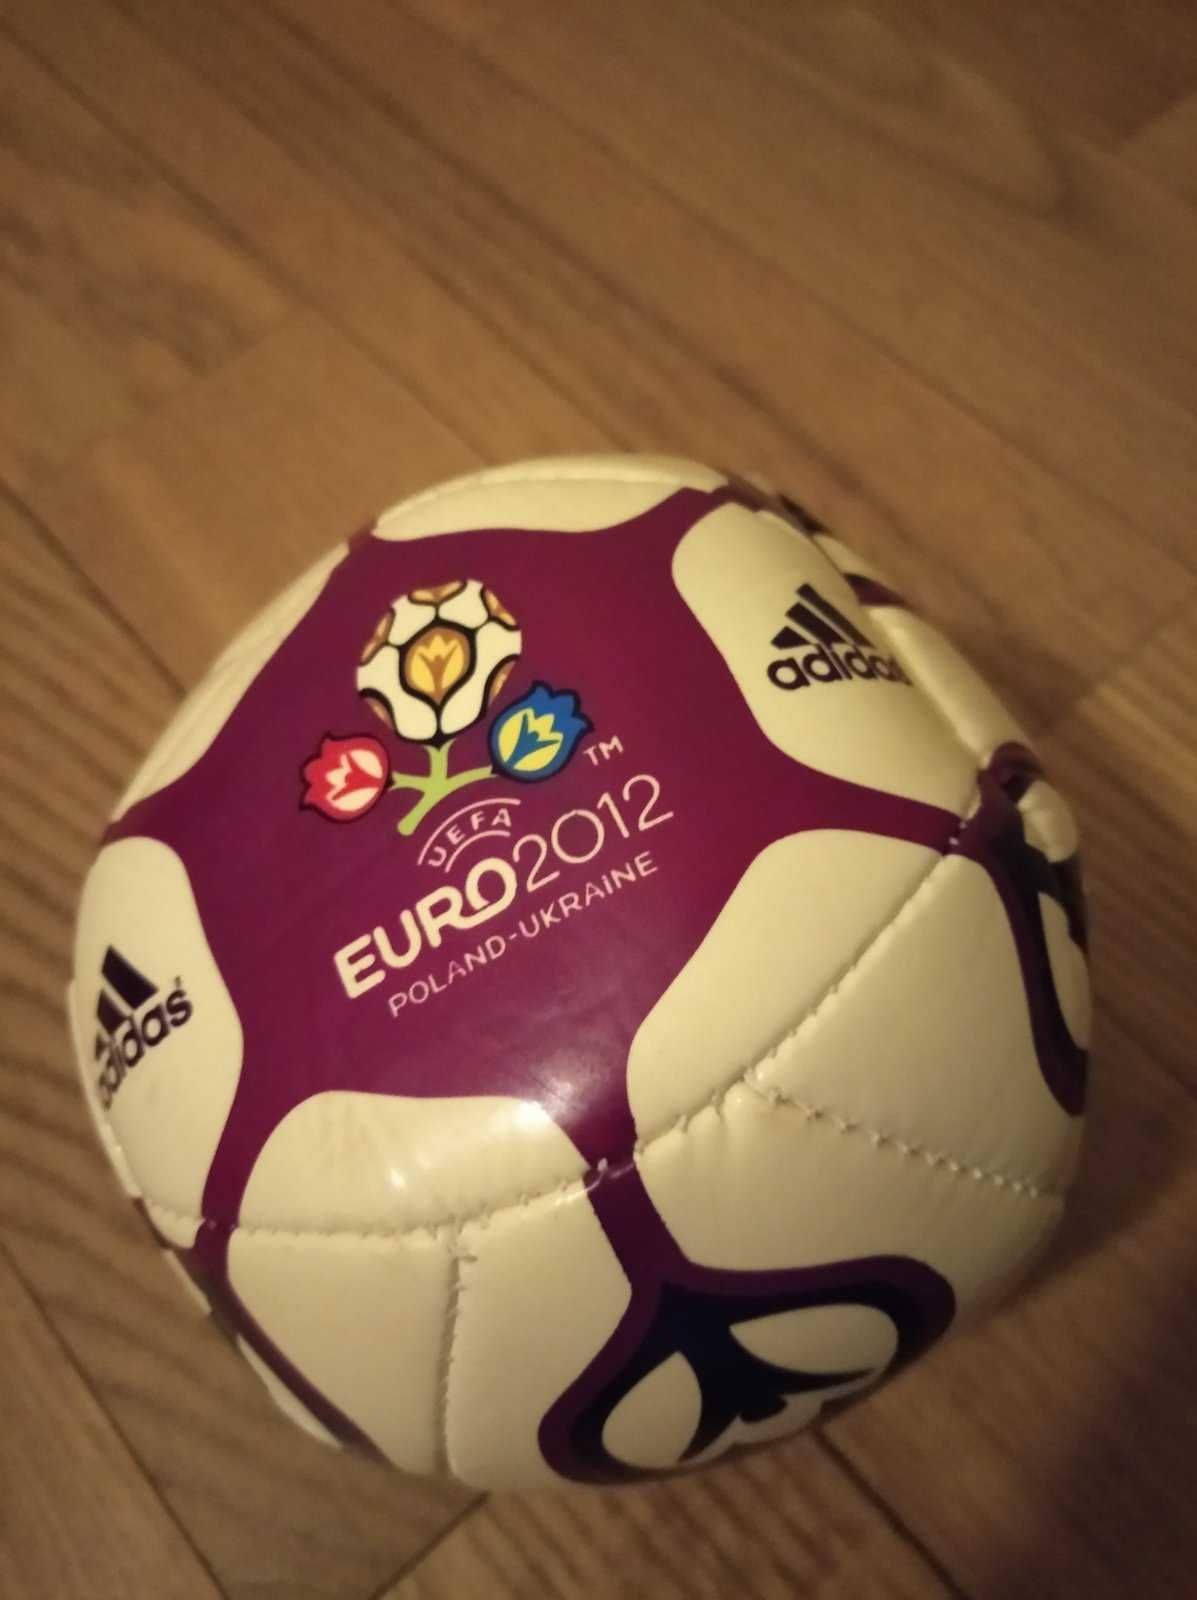 Футбольный мяч Евро 2012. Большой и малый (отдельно).